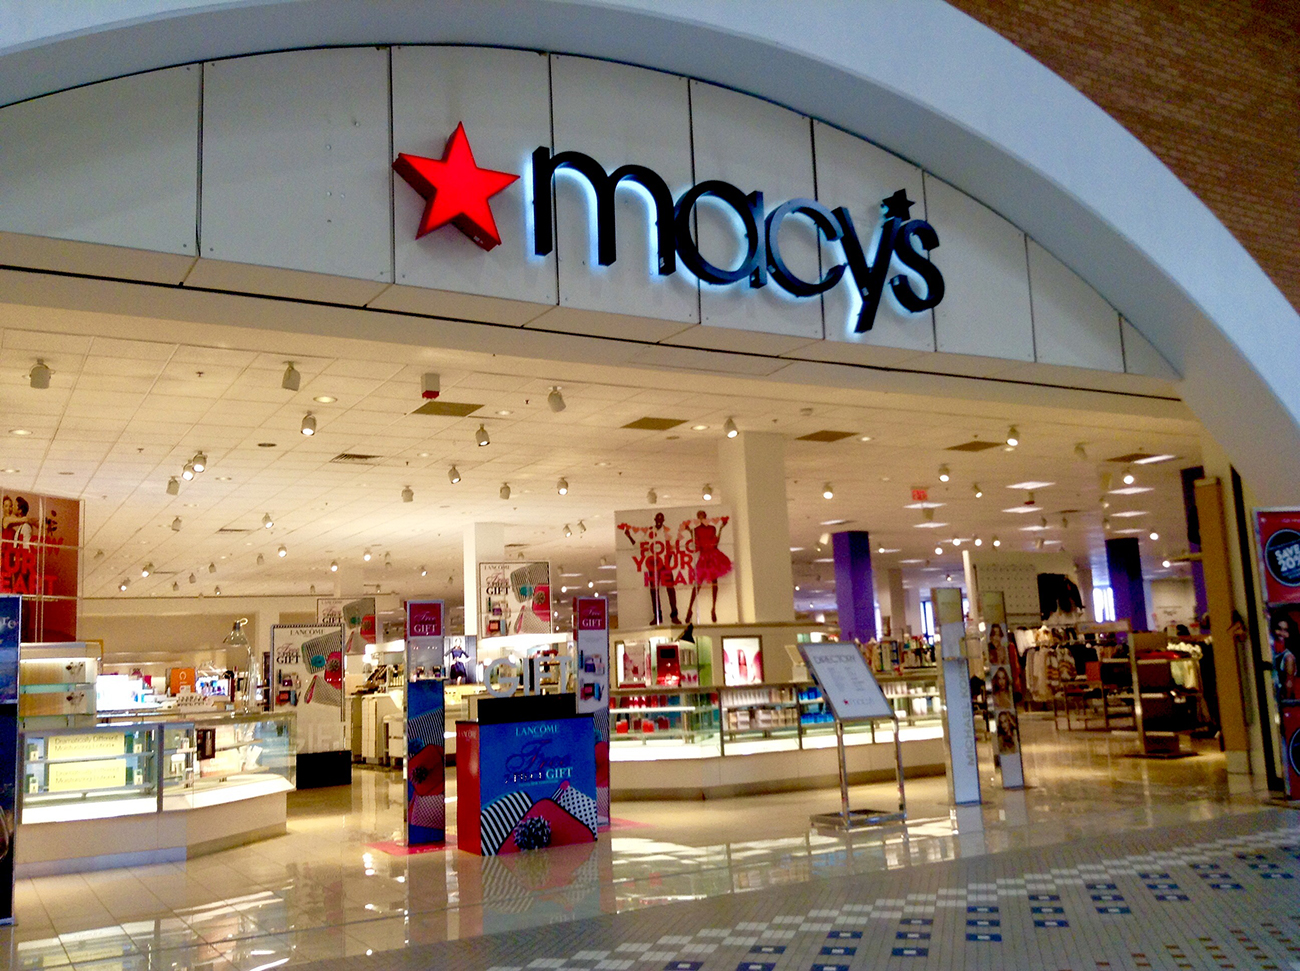 A fotografia mostra a entrada bem iluminada de uma loja de departamentos Macy's.